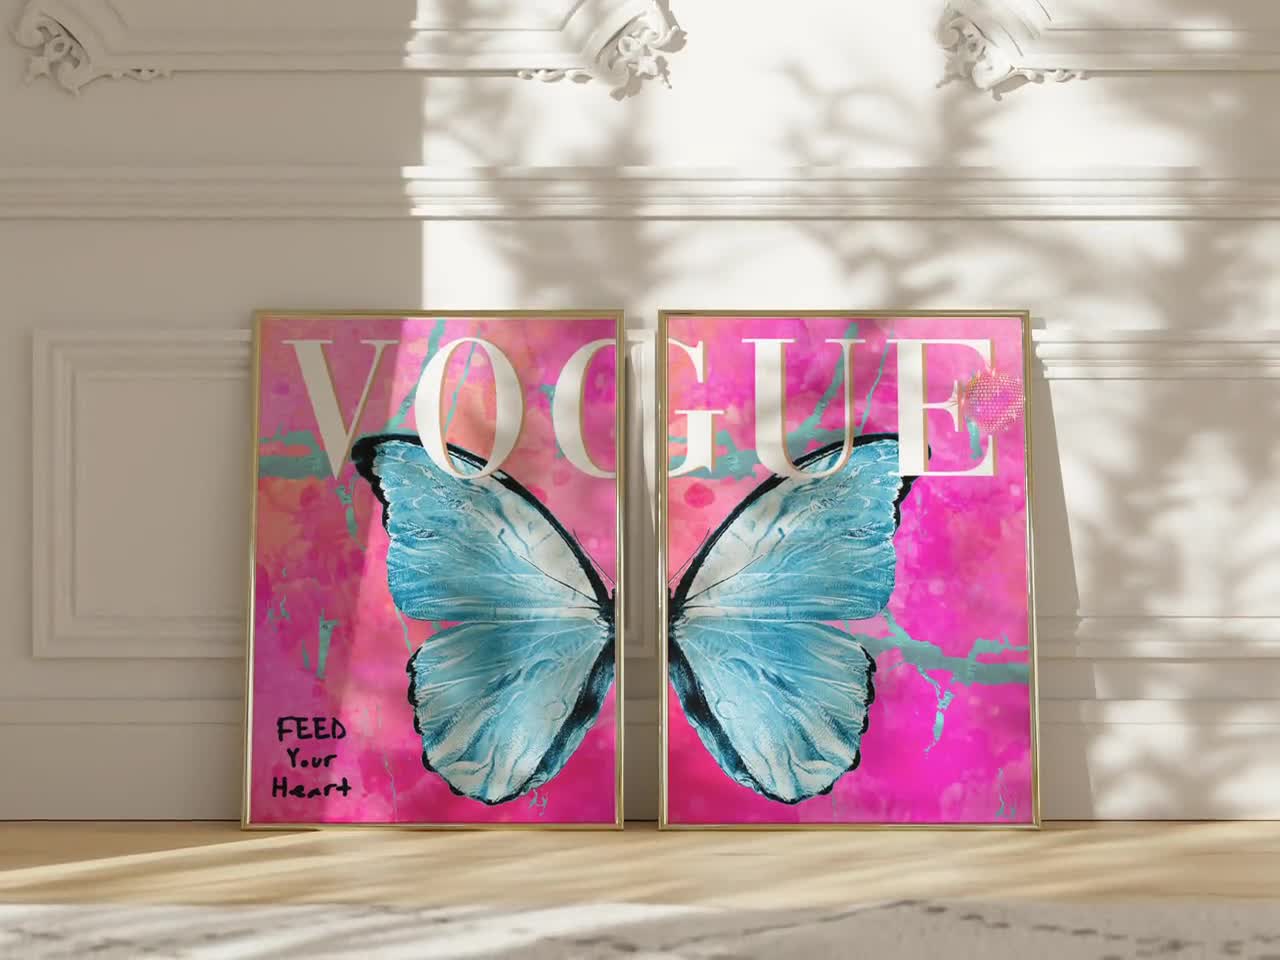 Fashion Art Prints Poster Vogue Wall Art Decor A4 Teal Salon